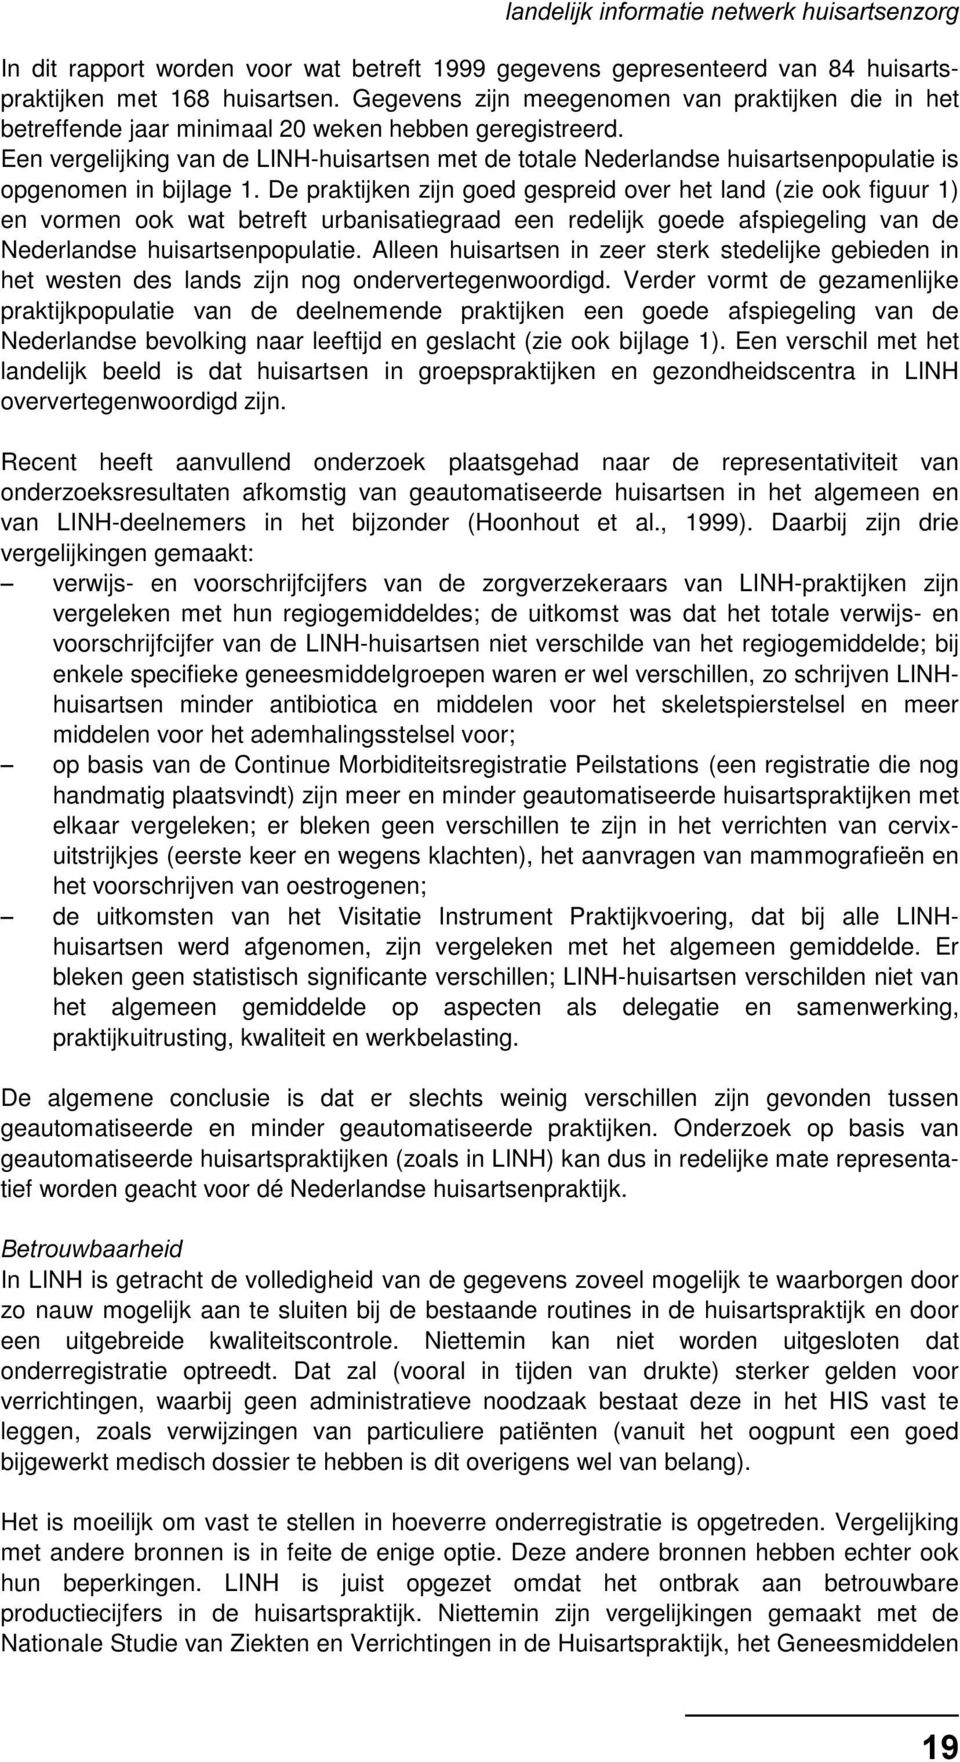 Een vergelijking van de LINH-huisartsen met de totale Nederlandse huisartsenpopulatie is opgenomen in bijlage 1.